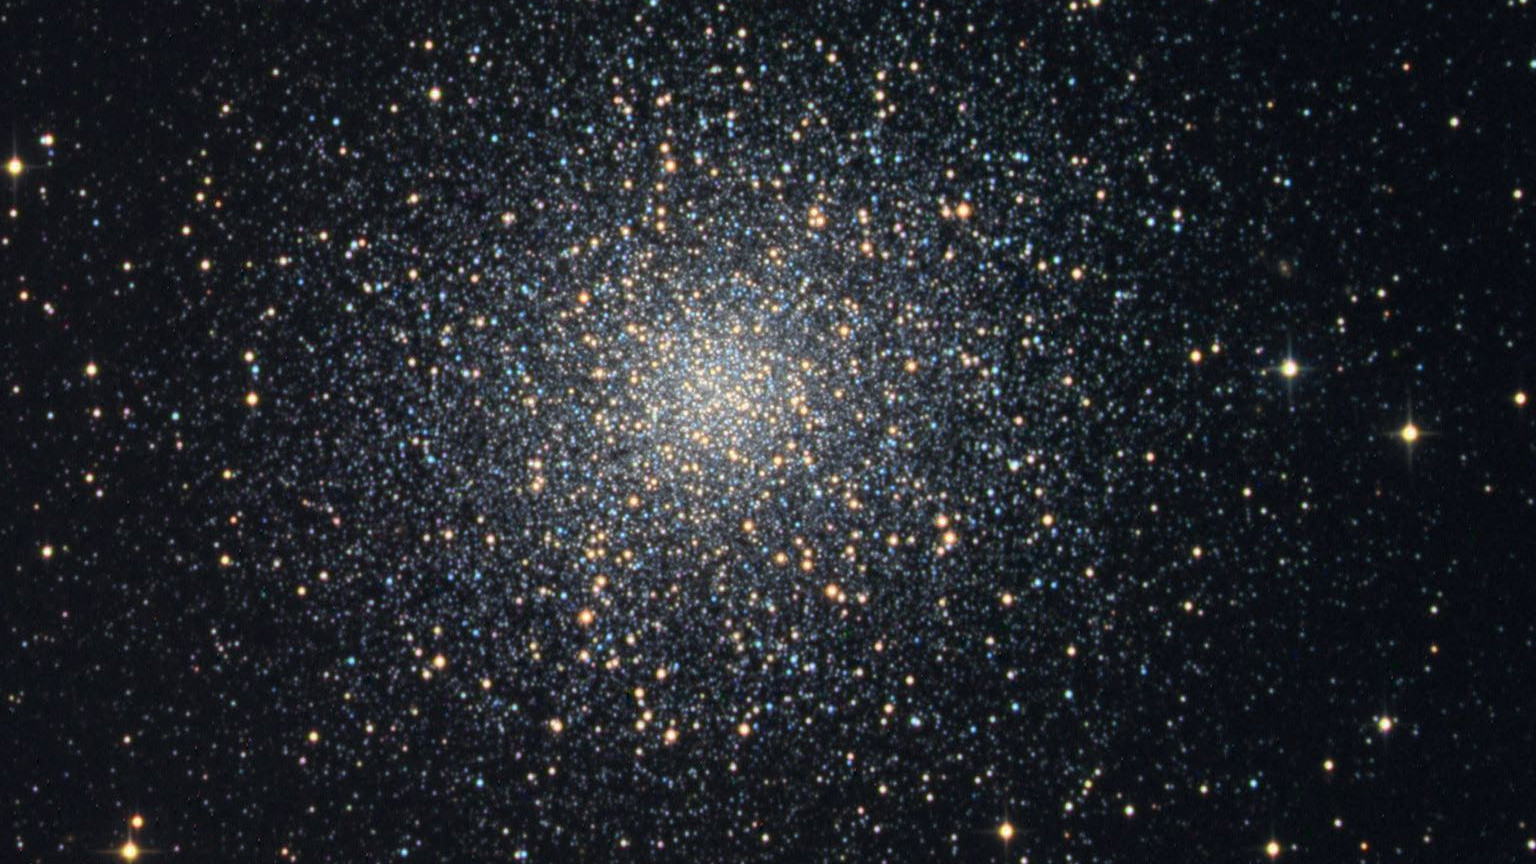 L’ammasso globulare M13 è un oggetto gratificante anche per chi osserva i cieli cittadini.
Michael Breite, Stefan Heutz und Wolfgang Ries/CCD Guide